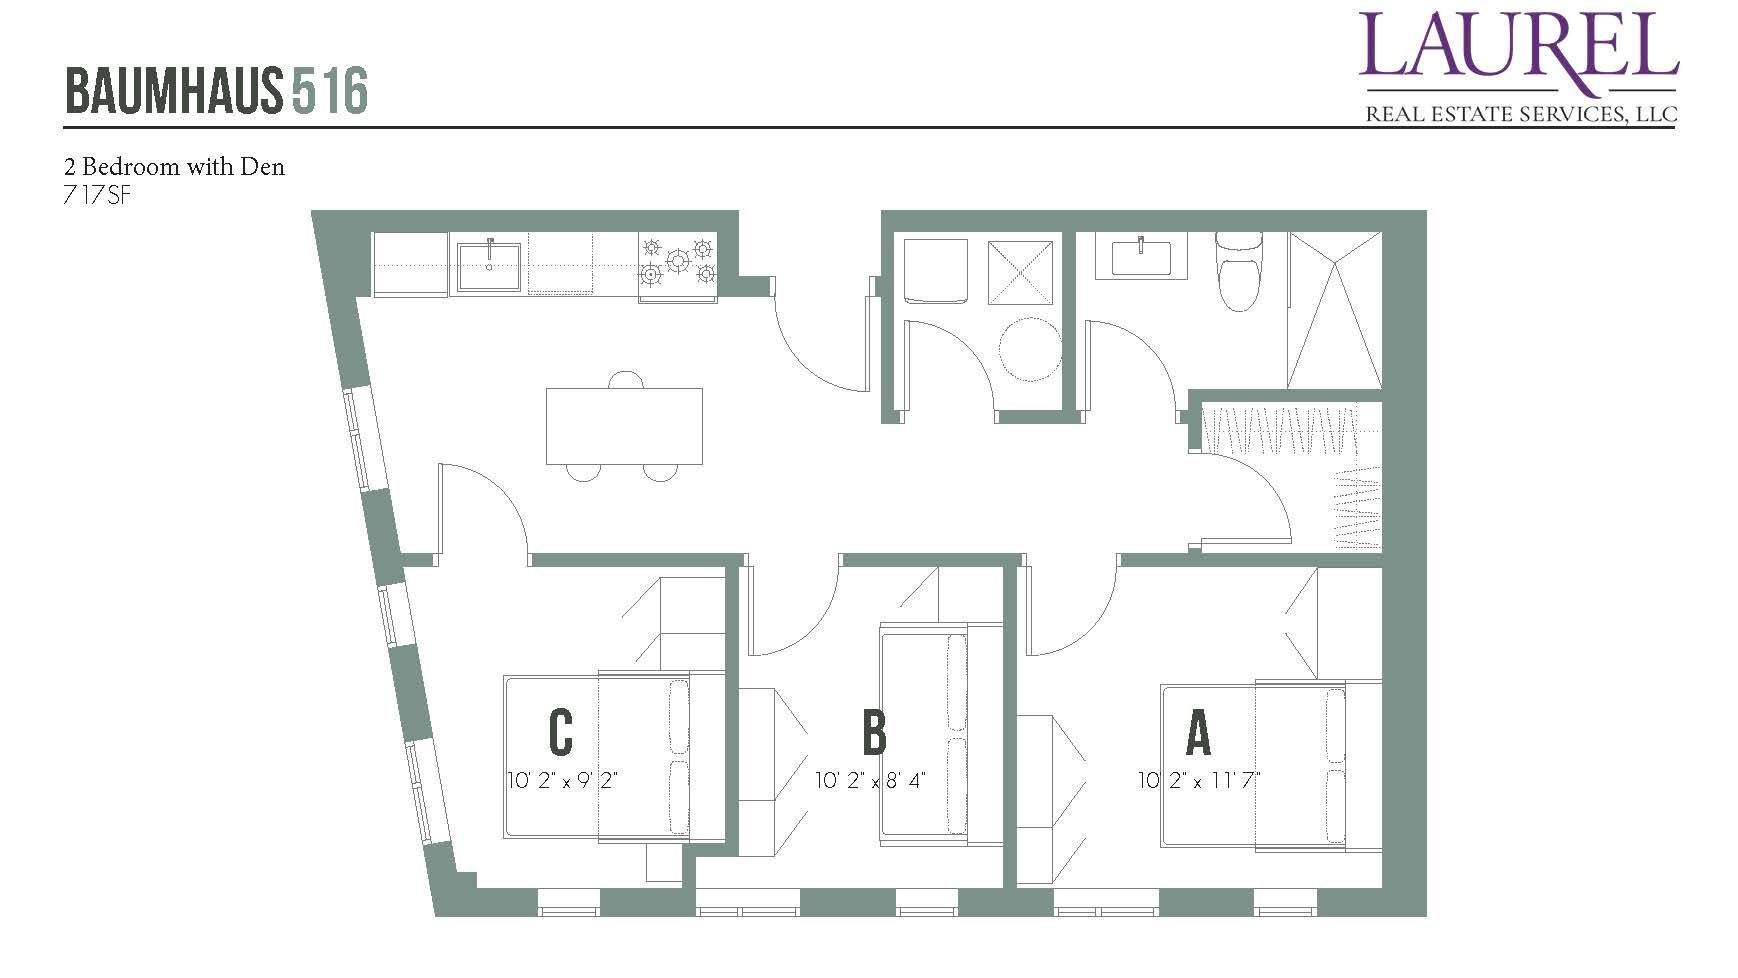 2 bedroom with den floor plan